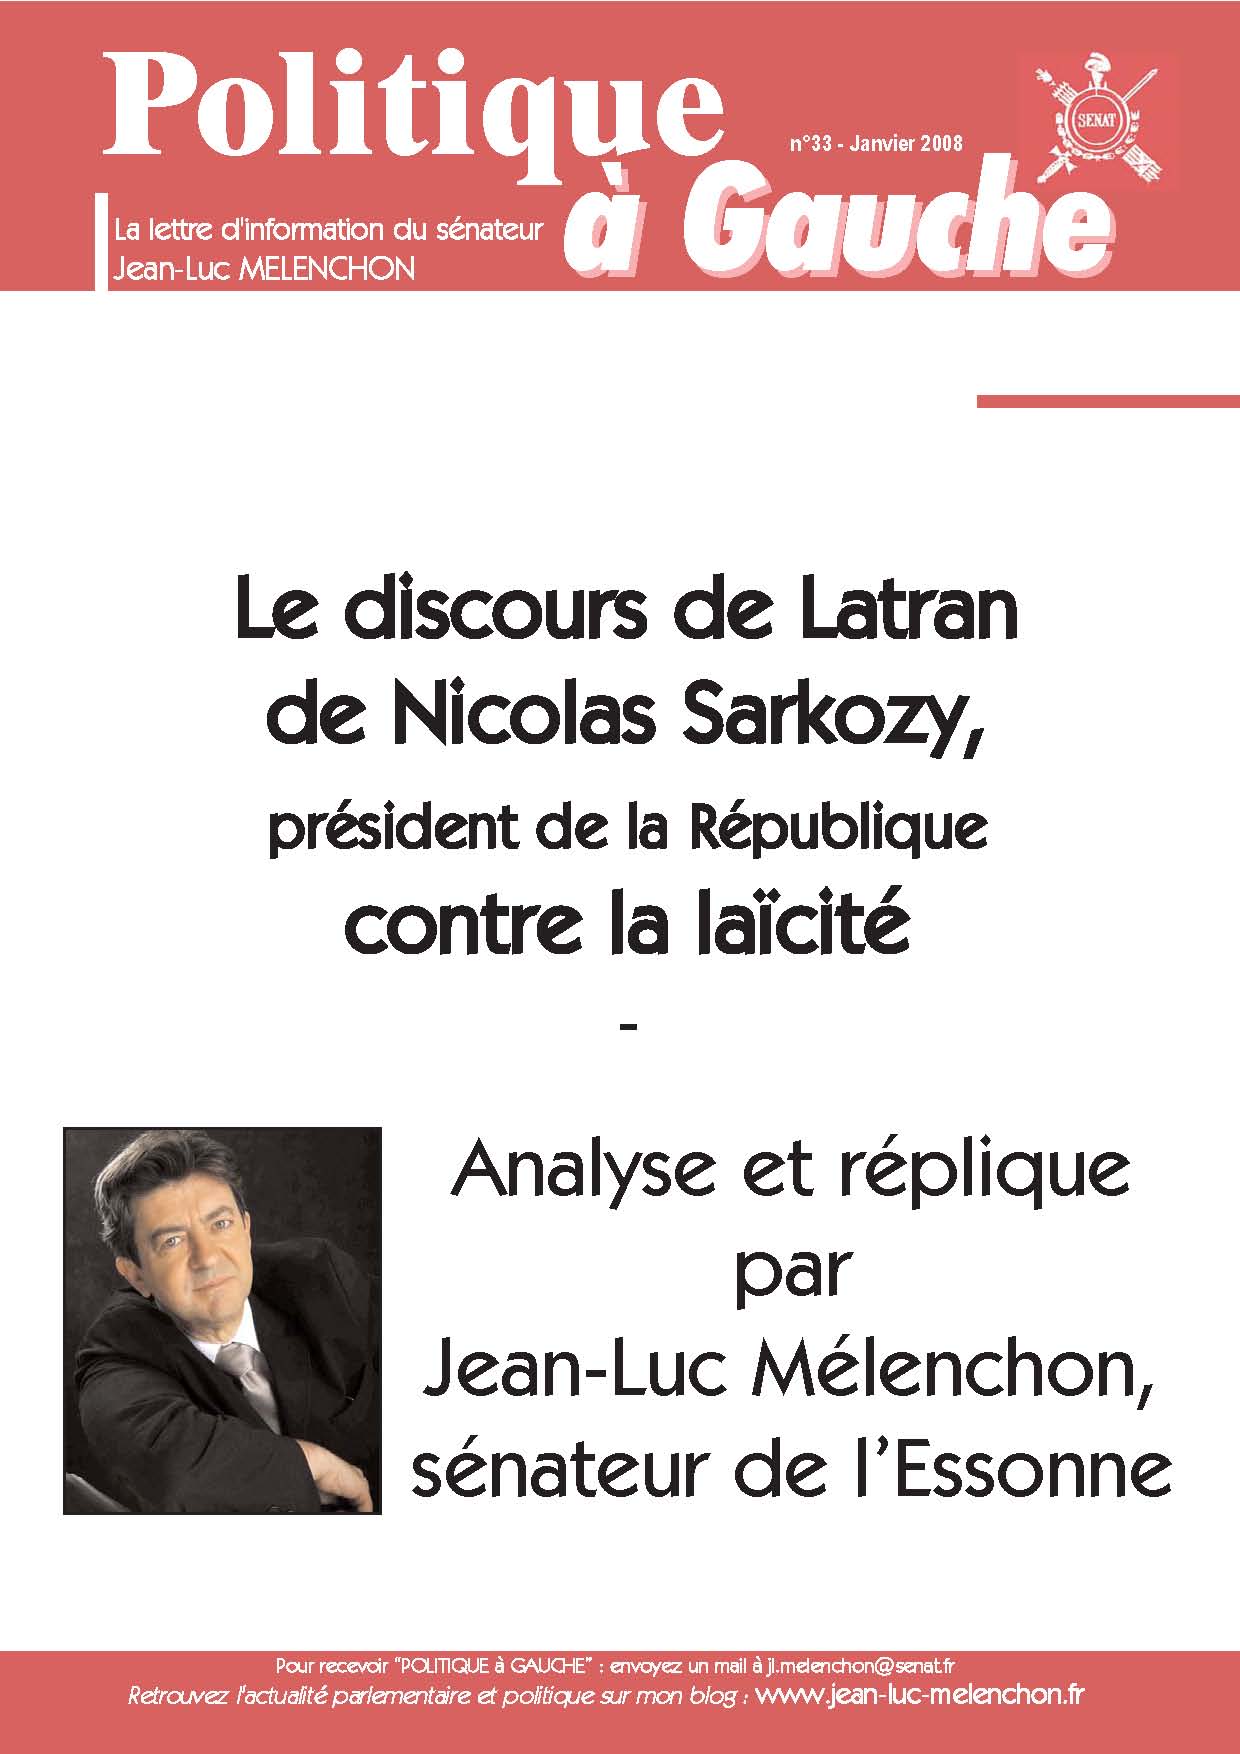 En cliquant sur l'image, vous pourrez télécharger le travail d'analyse et de réplique au discours de Latran de Sarkozy que j'ai réalisé à partir de la conférence que j'ai prononcée sur ce sujet au Grand Orient de France le 22 janvier dernier.